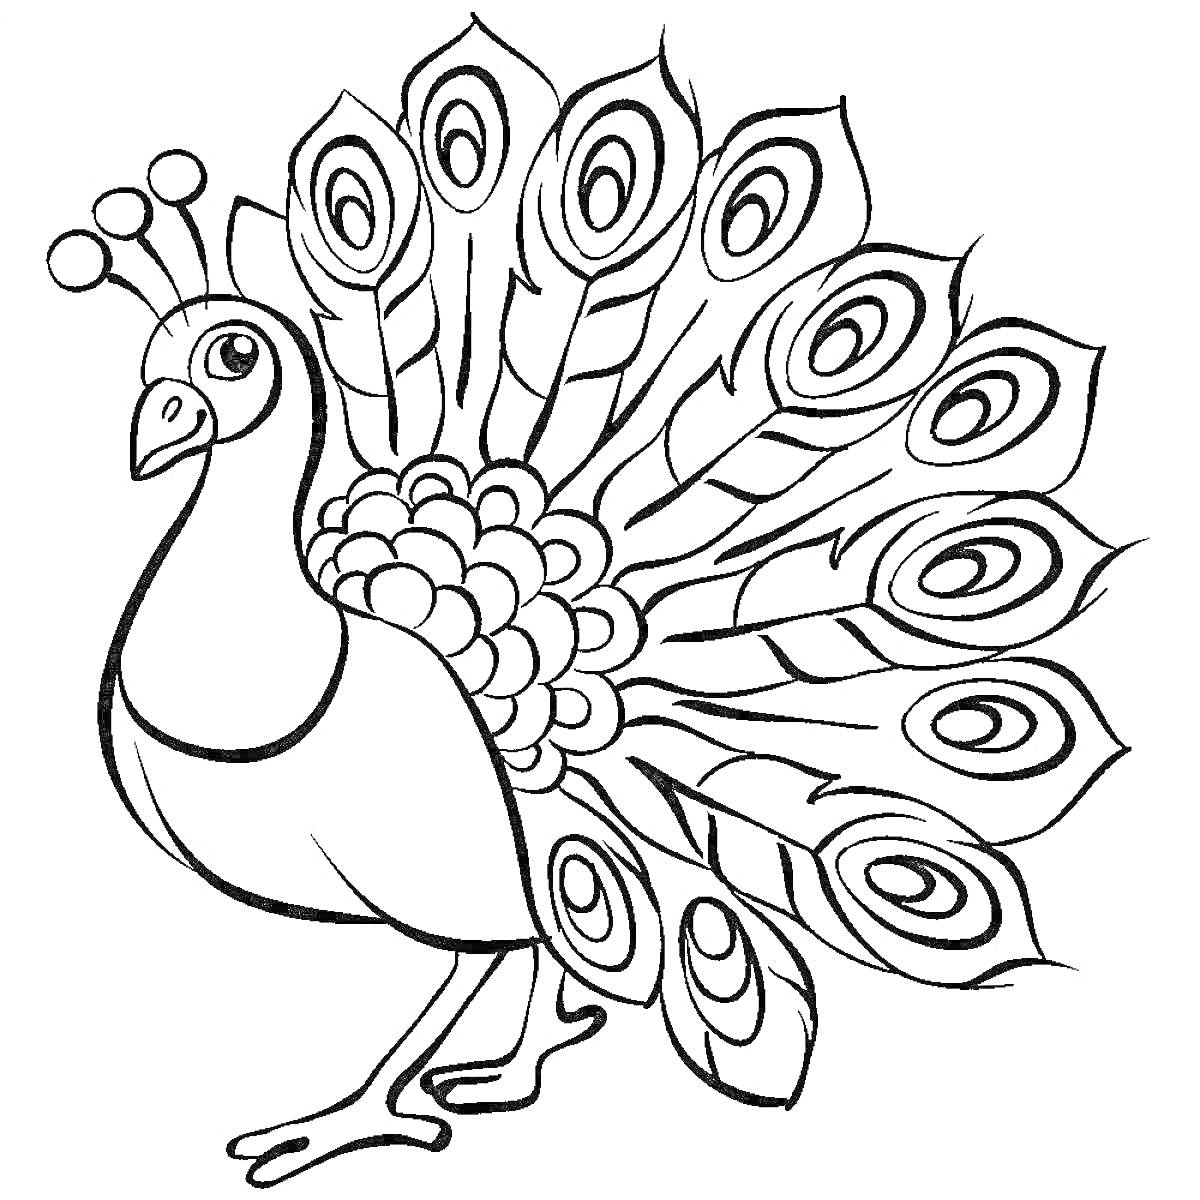 Раскраска Раскраска павлина для детей с раскрытыми хвостовыми перьями и декоративными глазами на хвосте